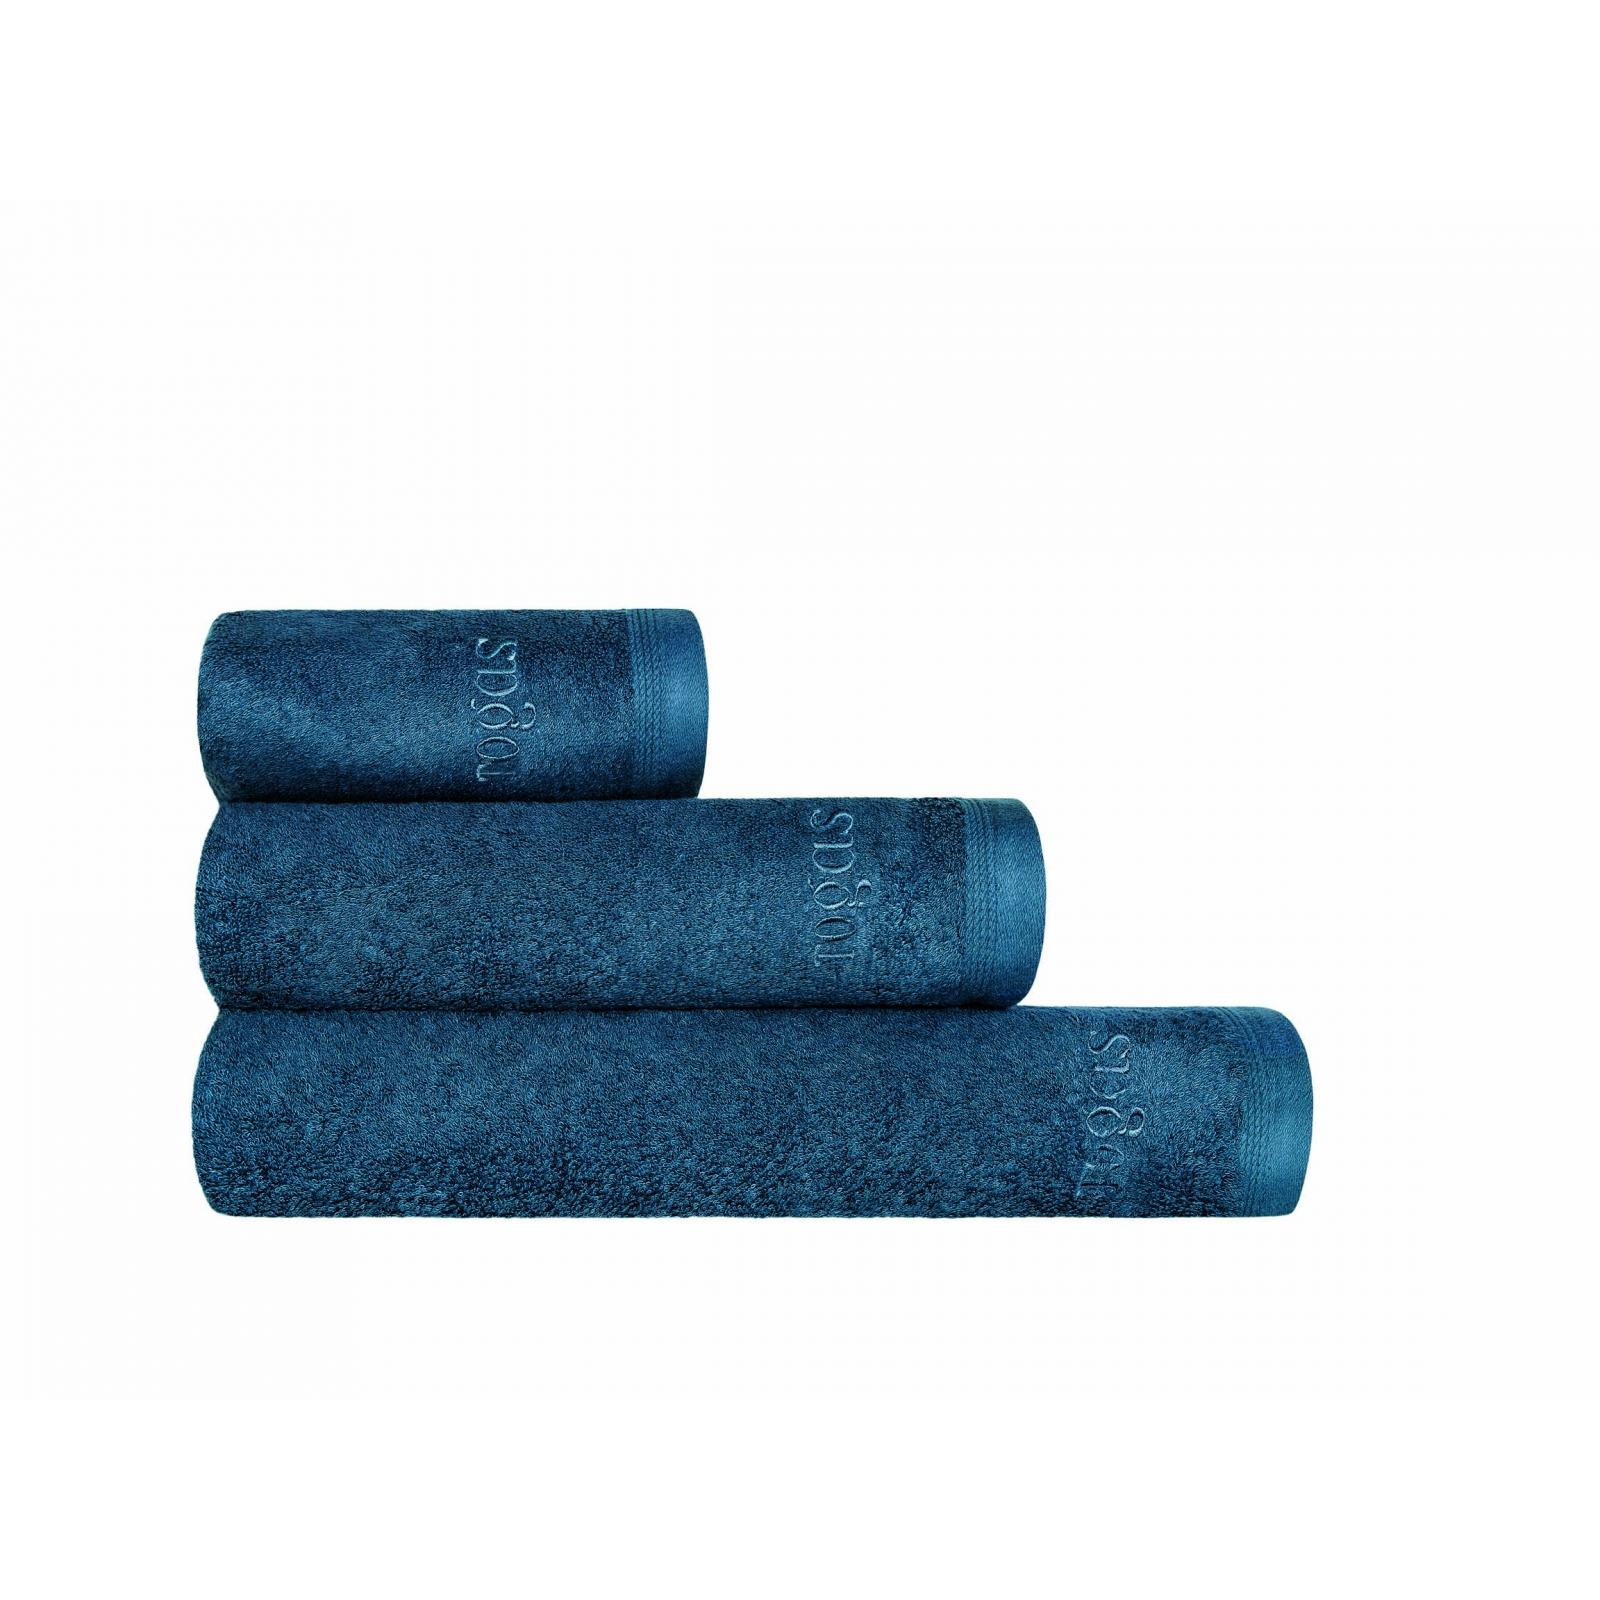 Полотенце Togas Пуатье темно-синее 40х60 см полотенце togas пуатье темно синее 50х100 см